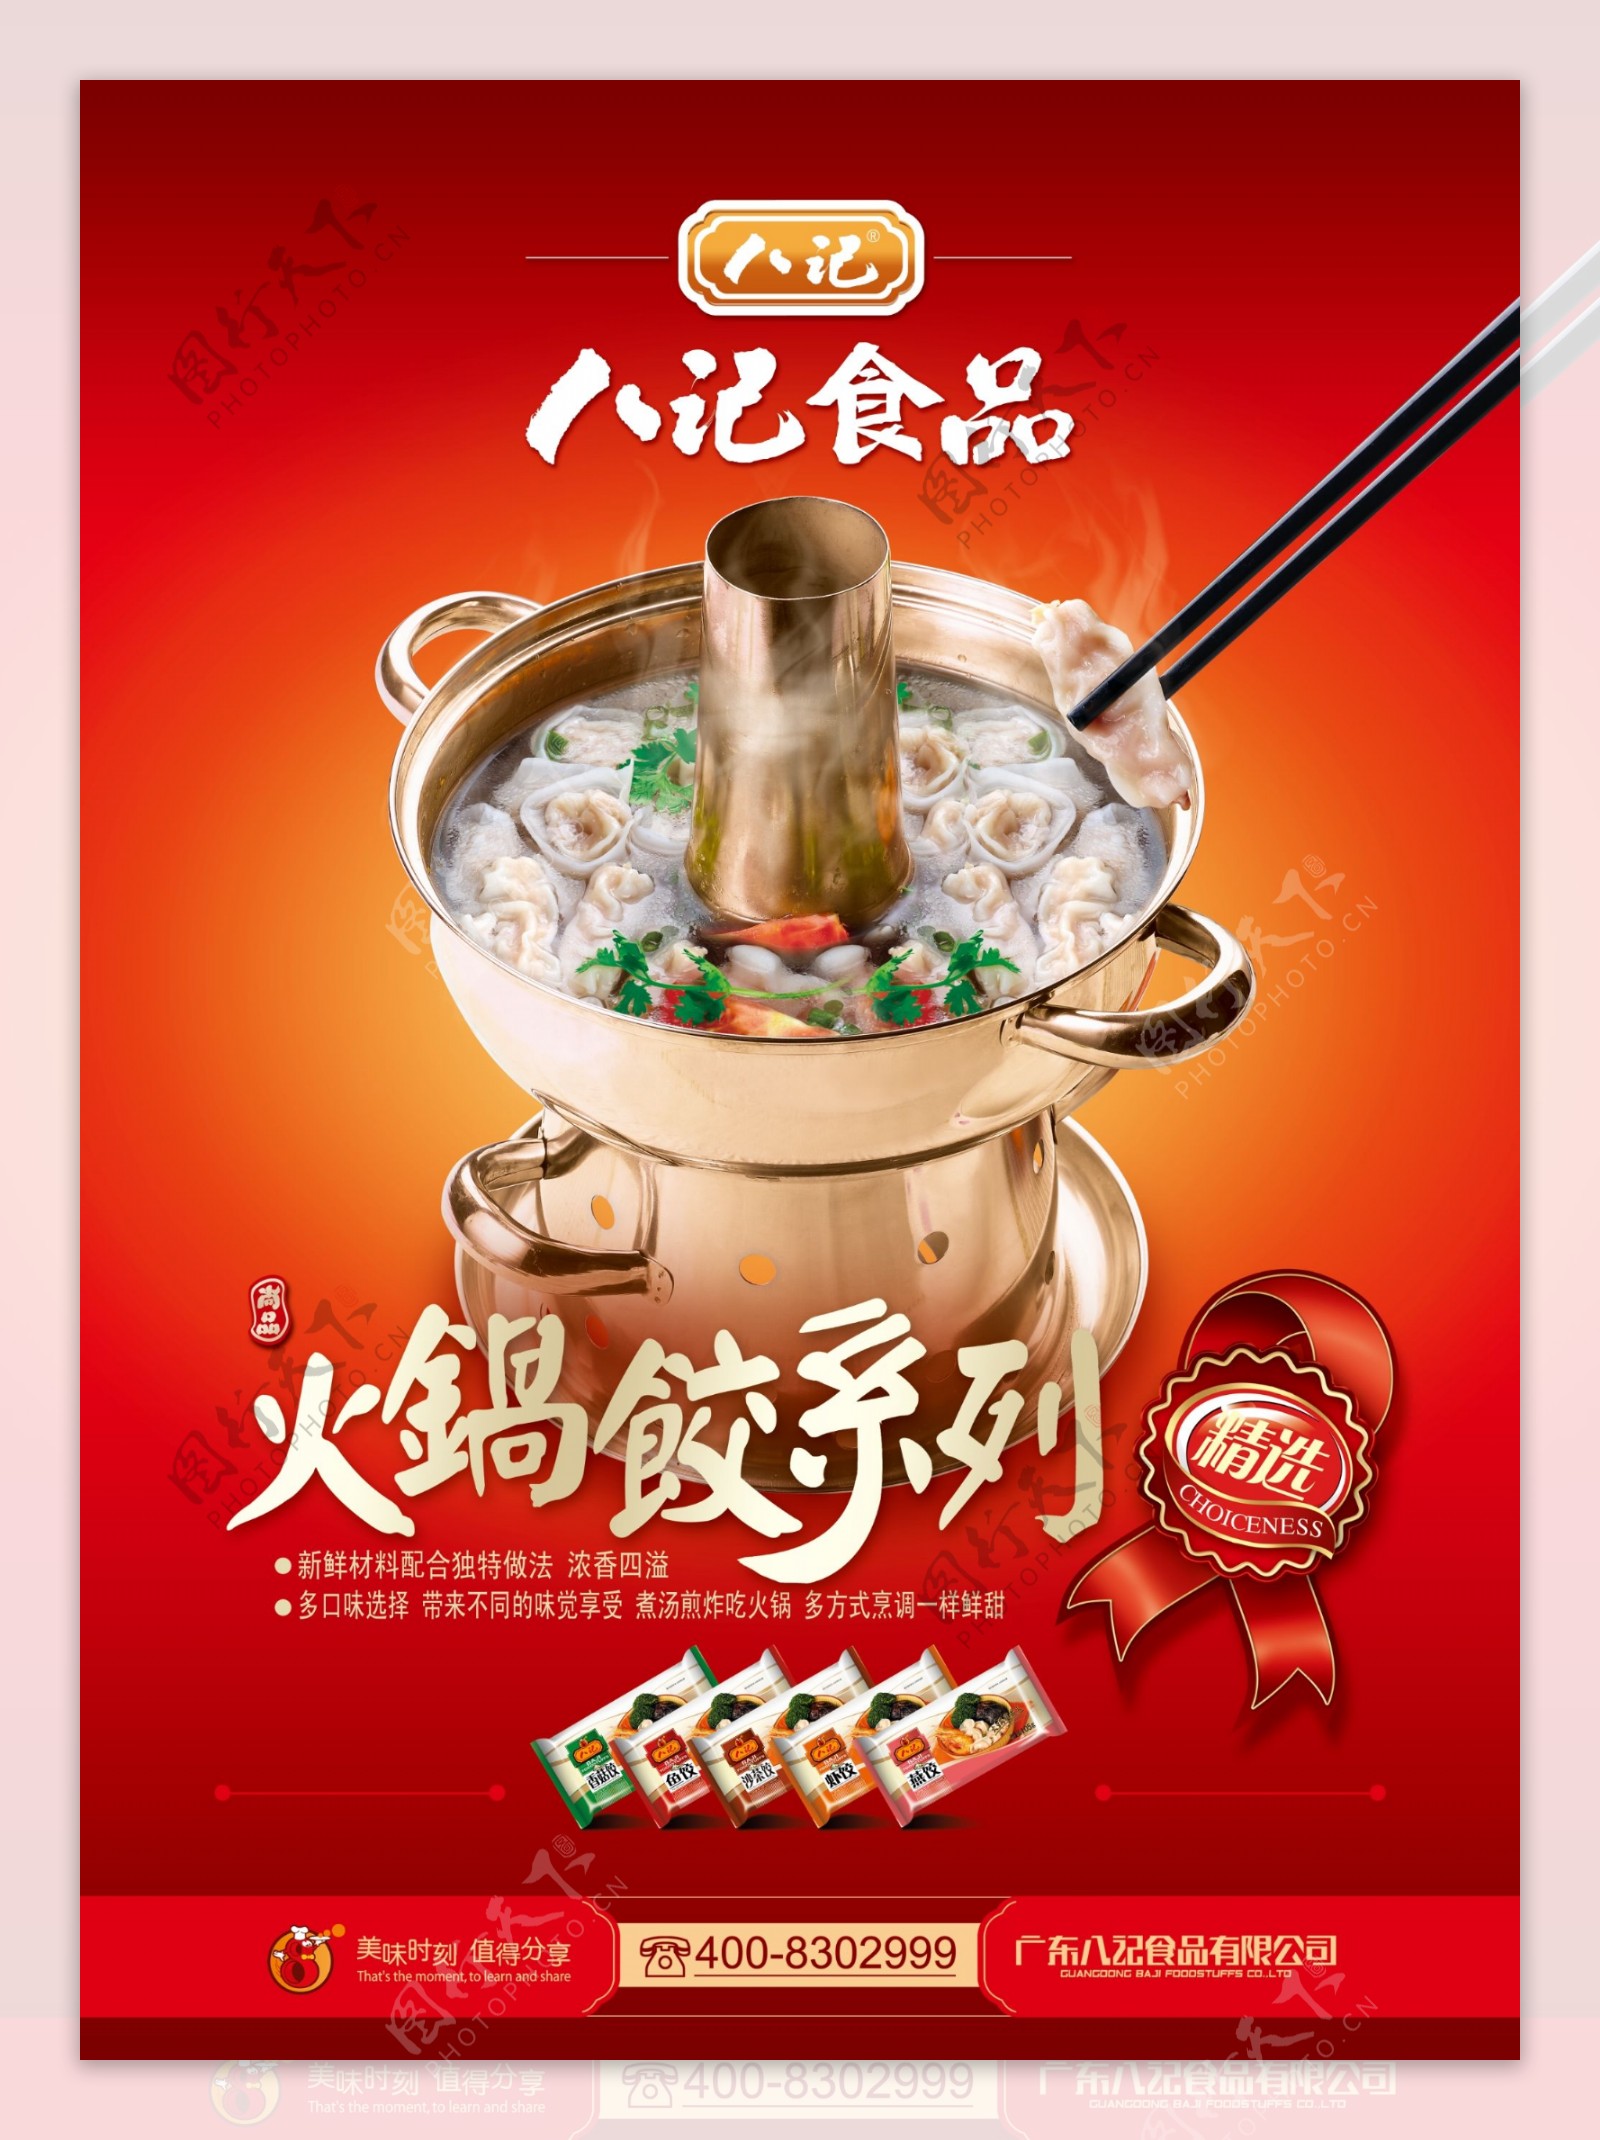 火锅饺美食宣传海报psd素材